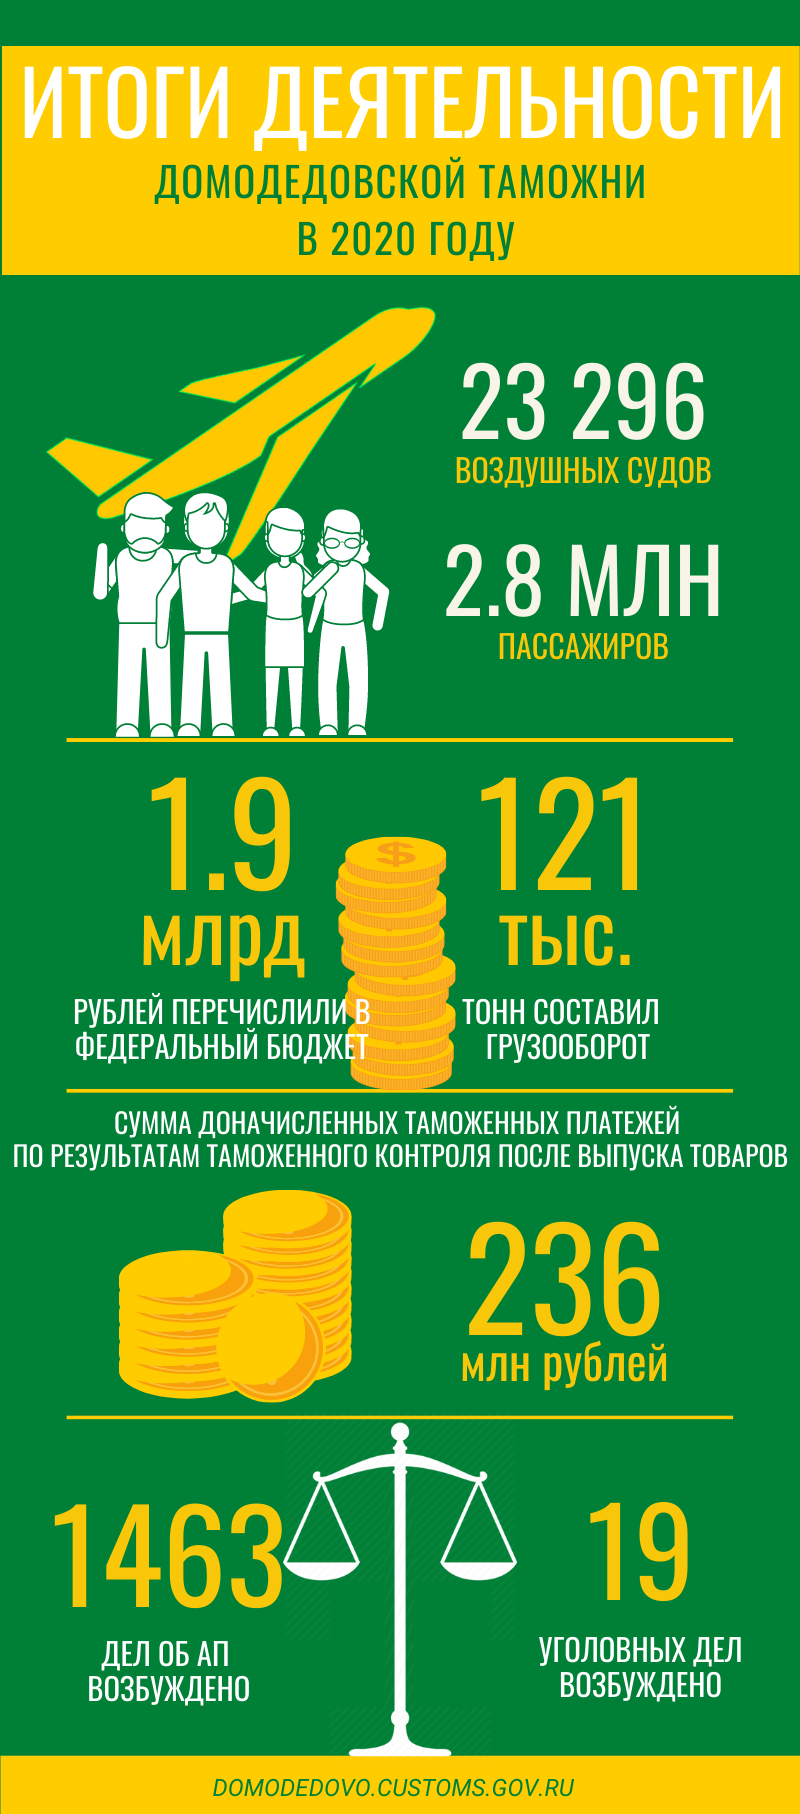 Инфографика итогов деятельности Домодедовской таможни за 2020 год